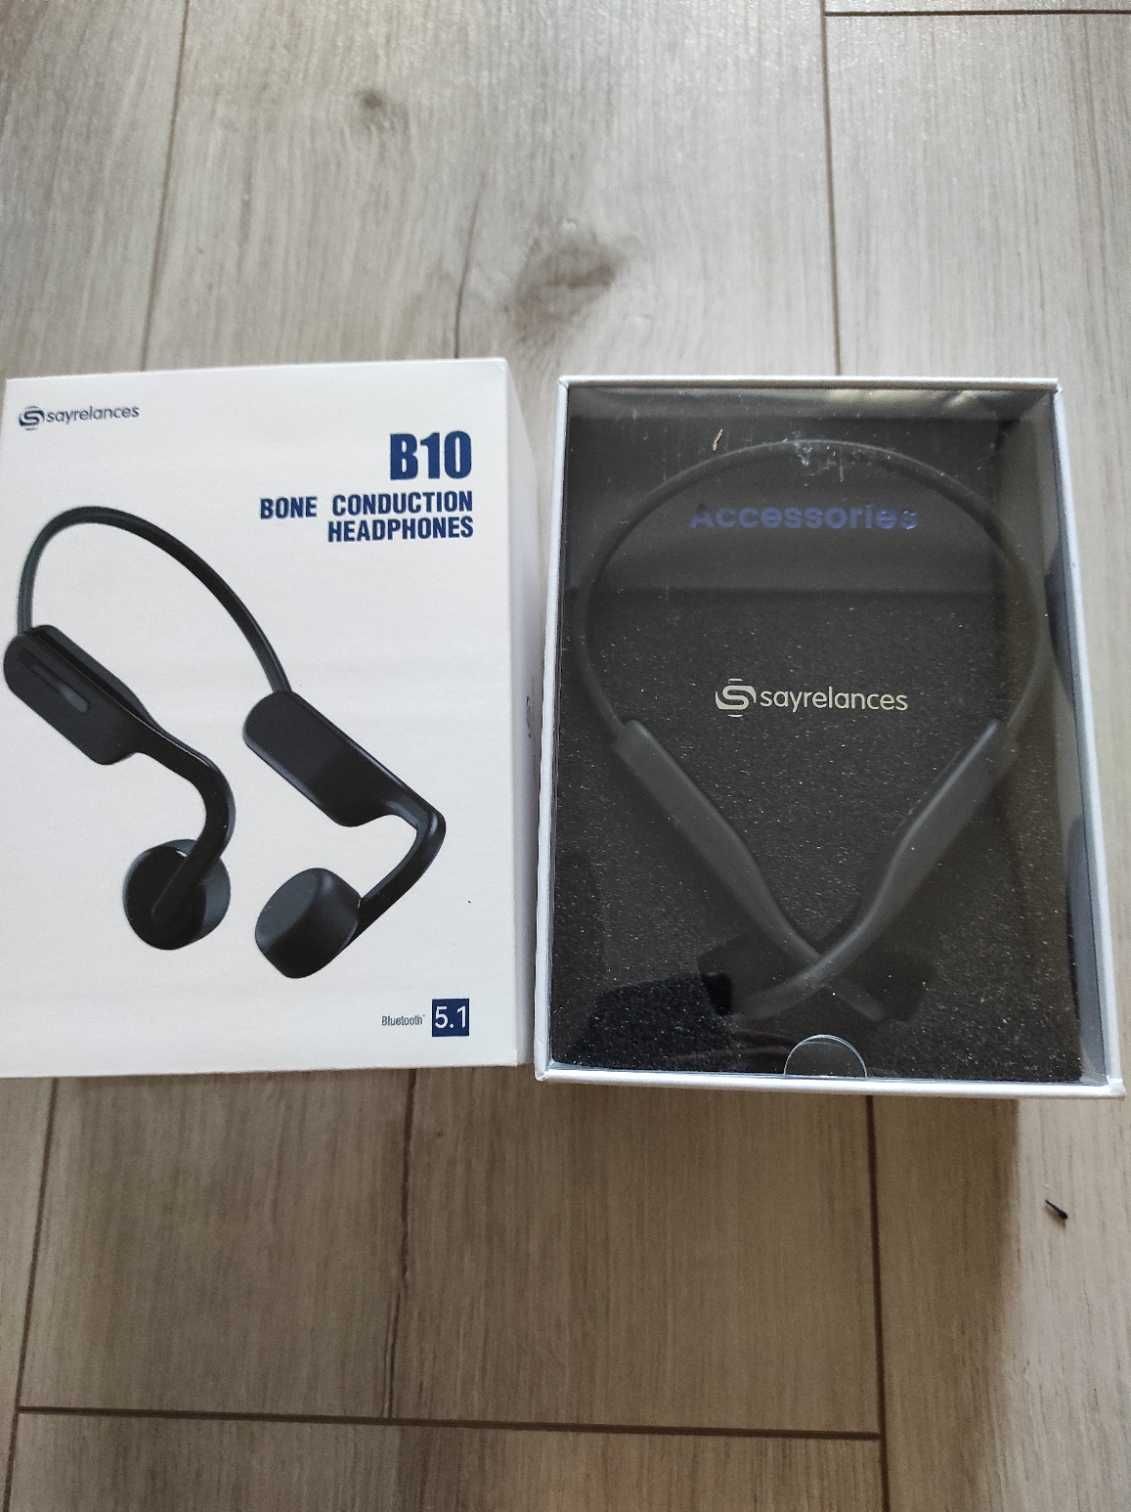 słuchawki Bluetooth z przewodnictwem kostnym